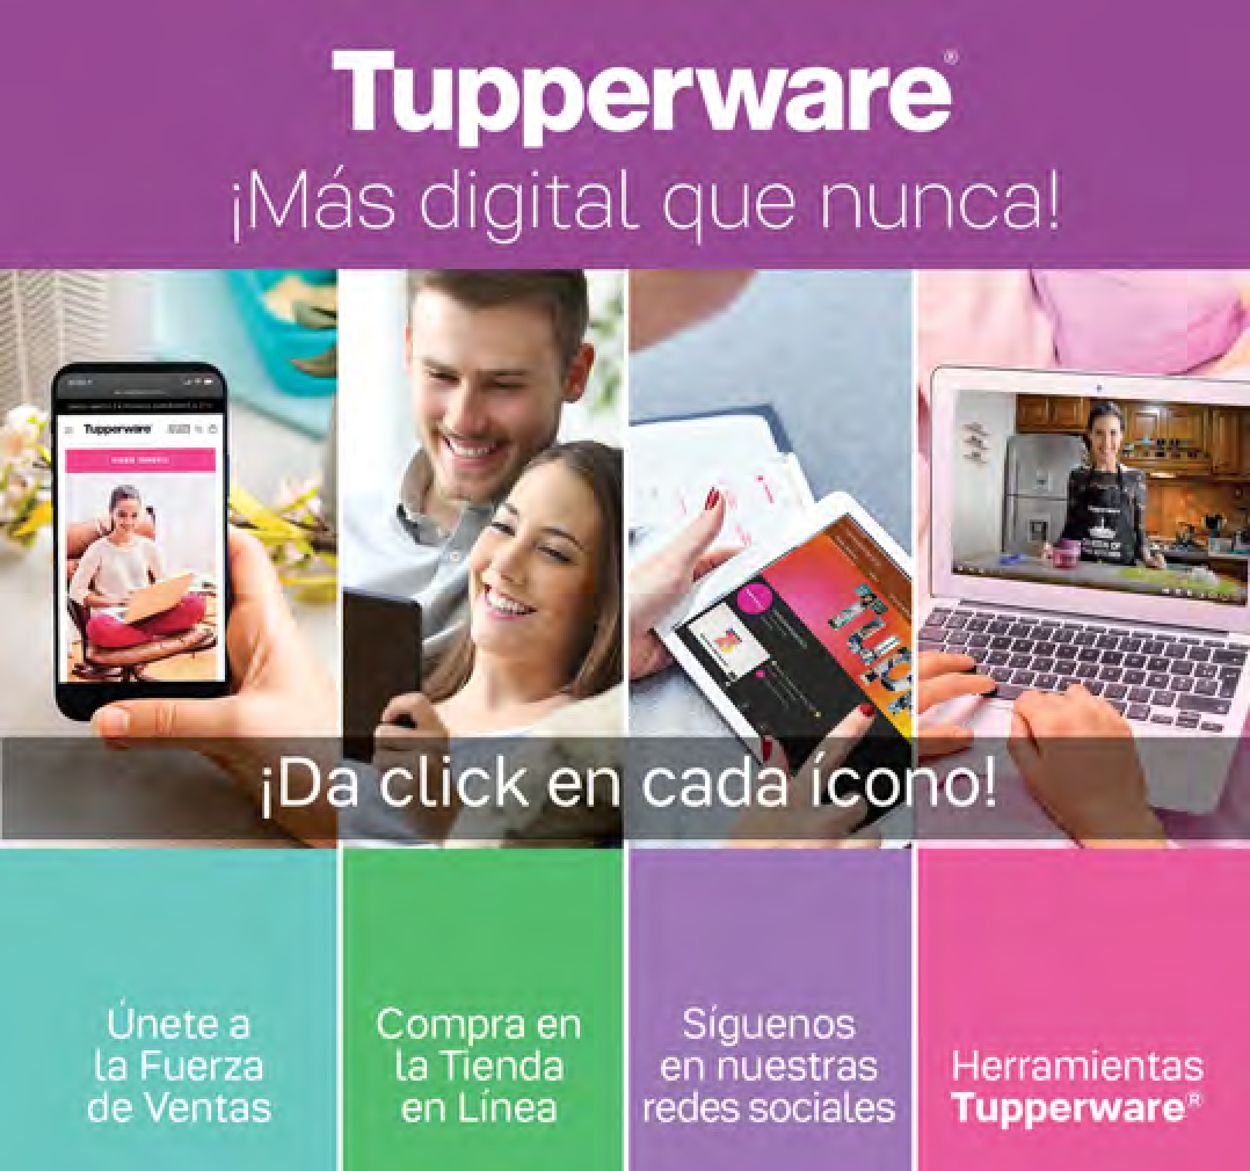 Tupperware Catálogo desde 28.02.2022